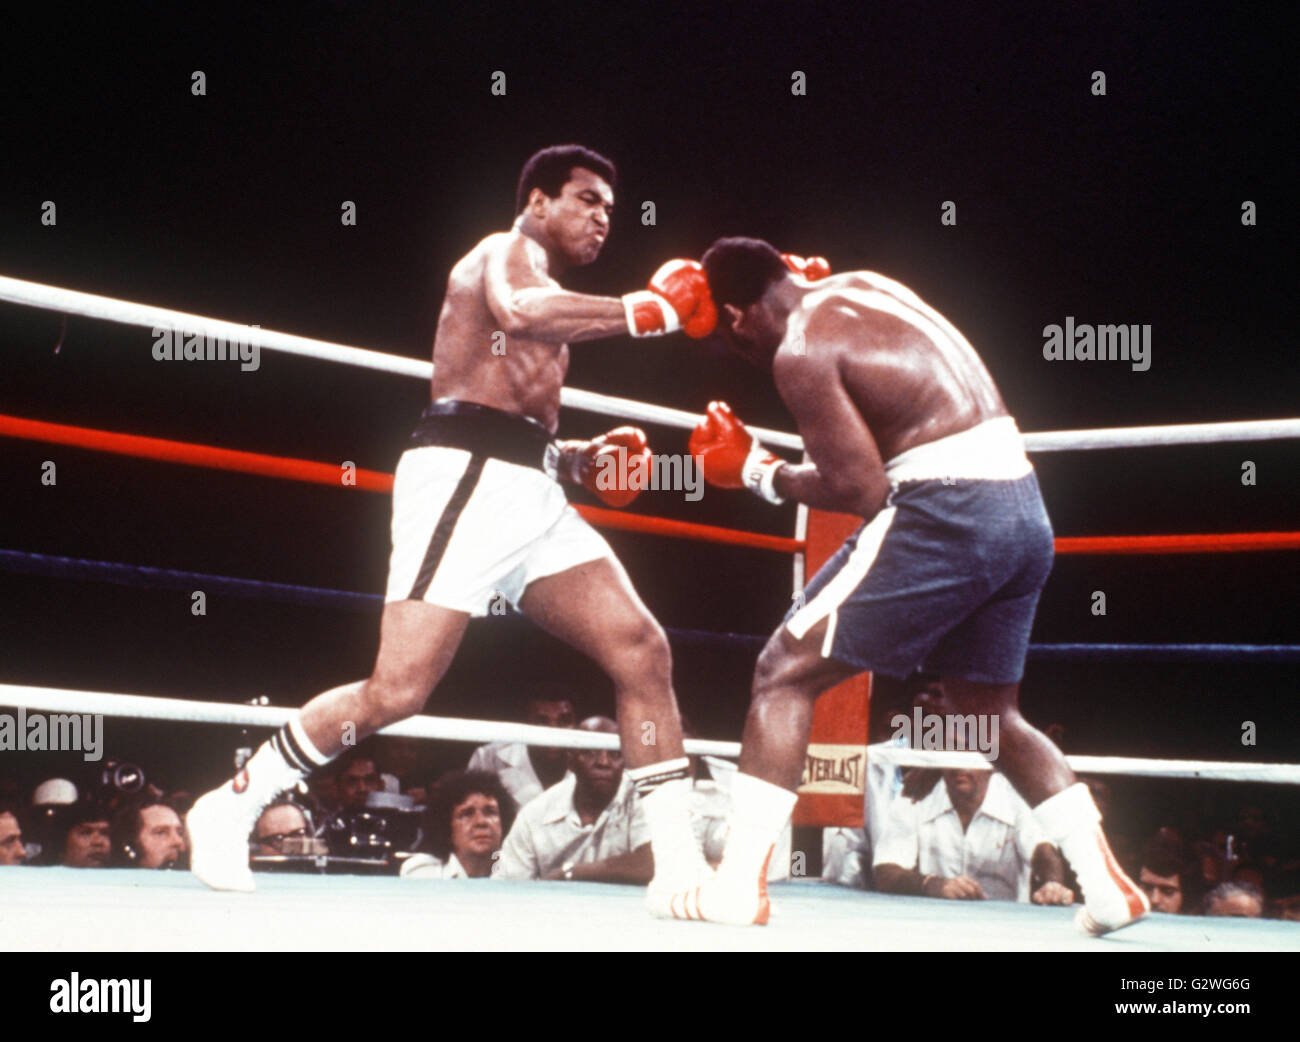 FILE - un file immagine datata 30 settembre 1975, ci mostra il boxer Muhammad Ali (L) di colpire la testa del suo avversario Joe Frazier durante il loro bout a Manila nelle Filippine. Nato Cassio argilla, boxe leggenda Muhammad Ali, soprannominato 'il più grande, ' morì il 03 giugno 2016 a Phoenix, Arizona, Stati Uniti d'America, all'età di 74, una famiglia portavoce ha detto. Foto: dpa Foto Stock